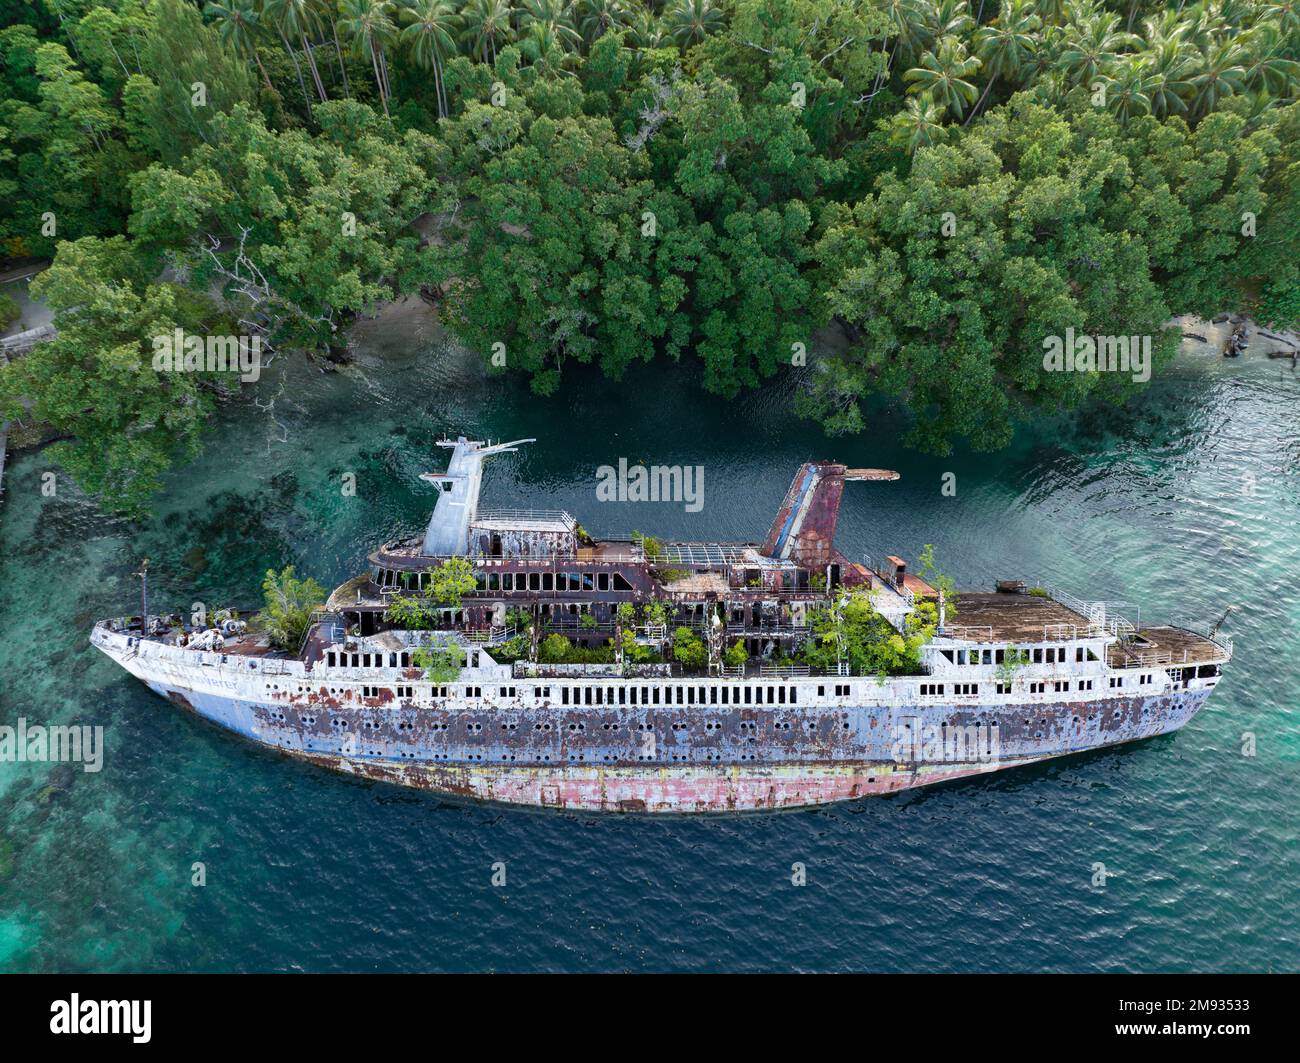 Madre natura sta lentamente rivendicando il World Discoverer, una nave da crociera che è stata naufragata nelle Isole Salomone. La nave ha colpito una barriera corallina nel 2000. Foto Stock